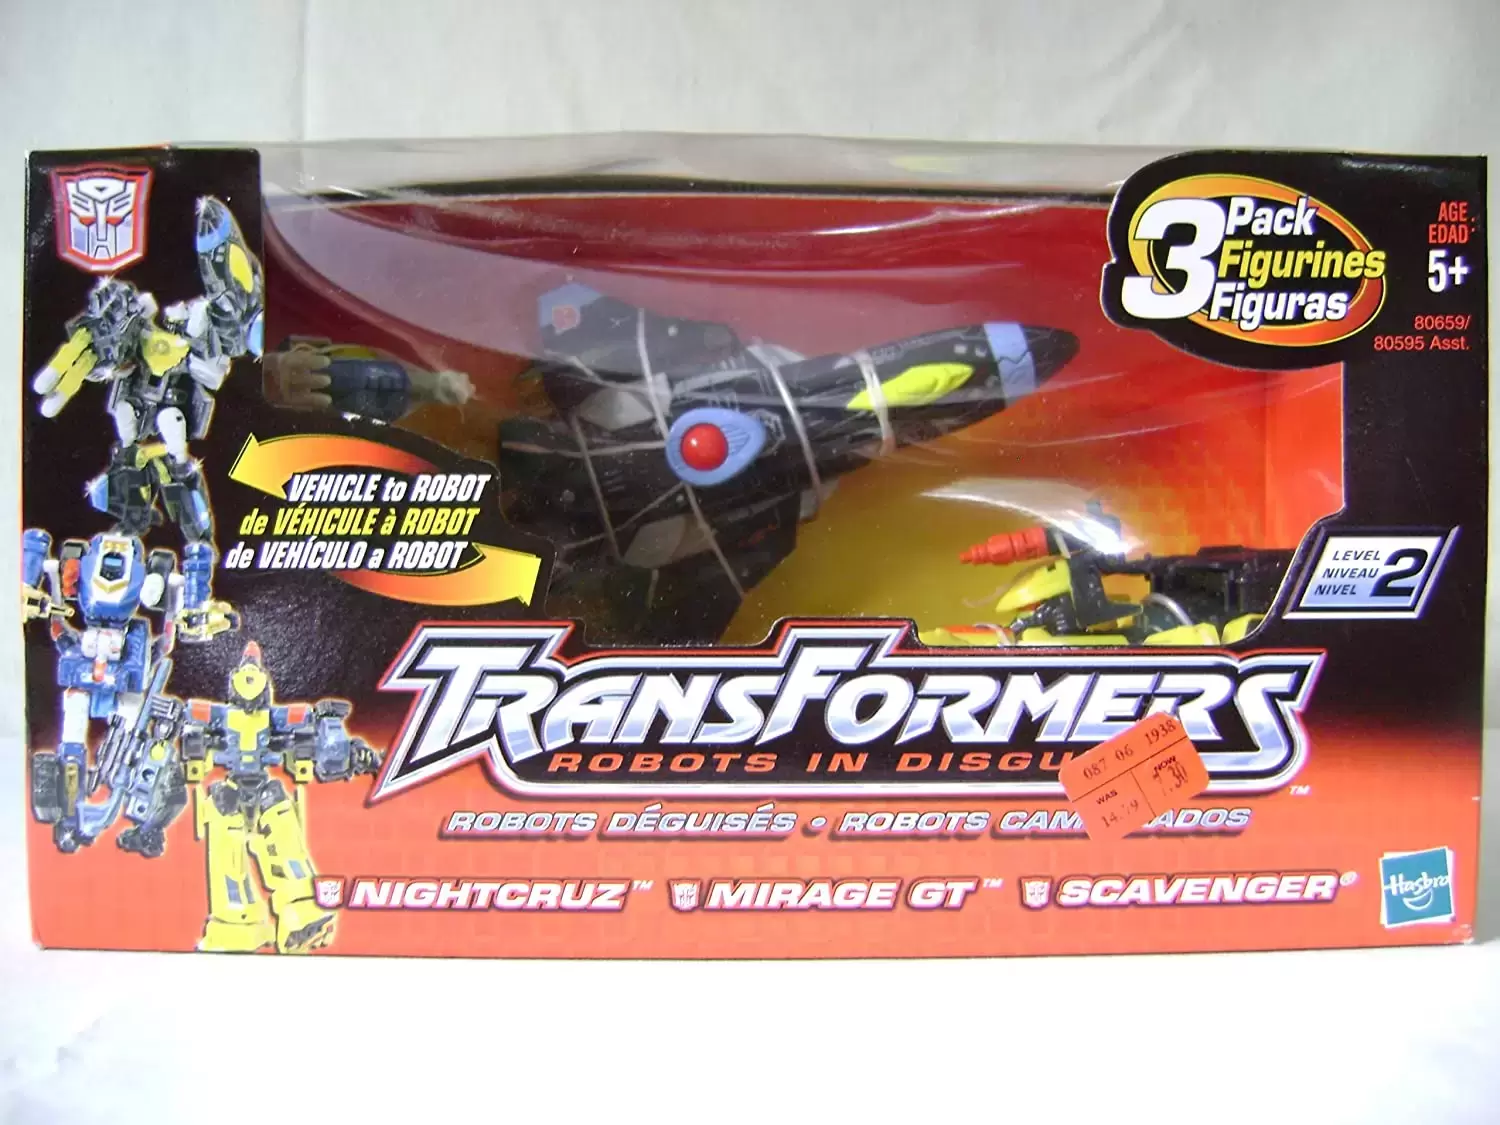 Transformers Robots in Disguise - Nightcruz, Mirage Gt & Scavenger